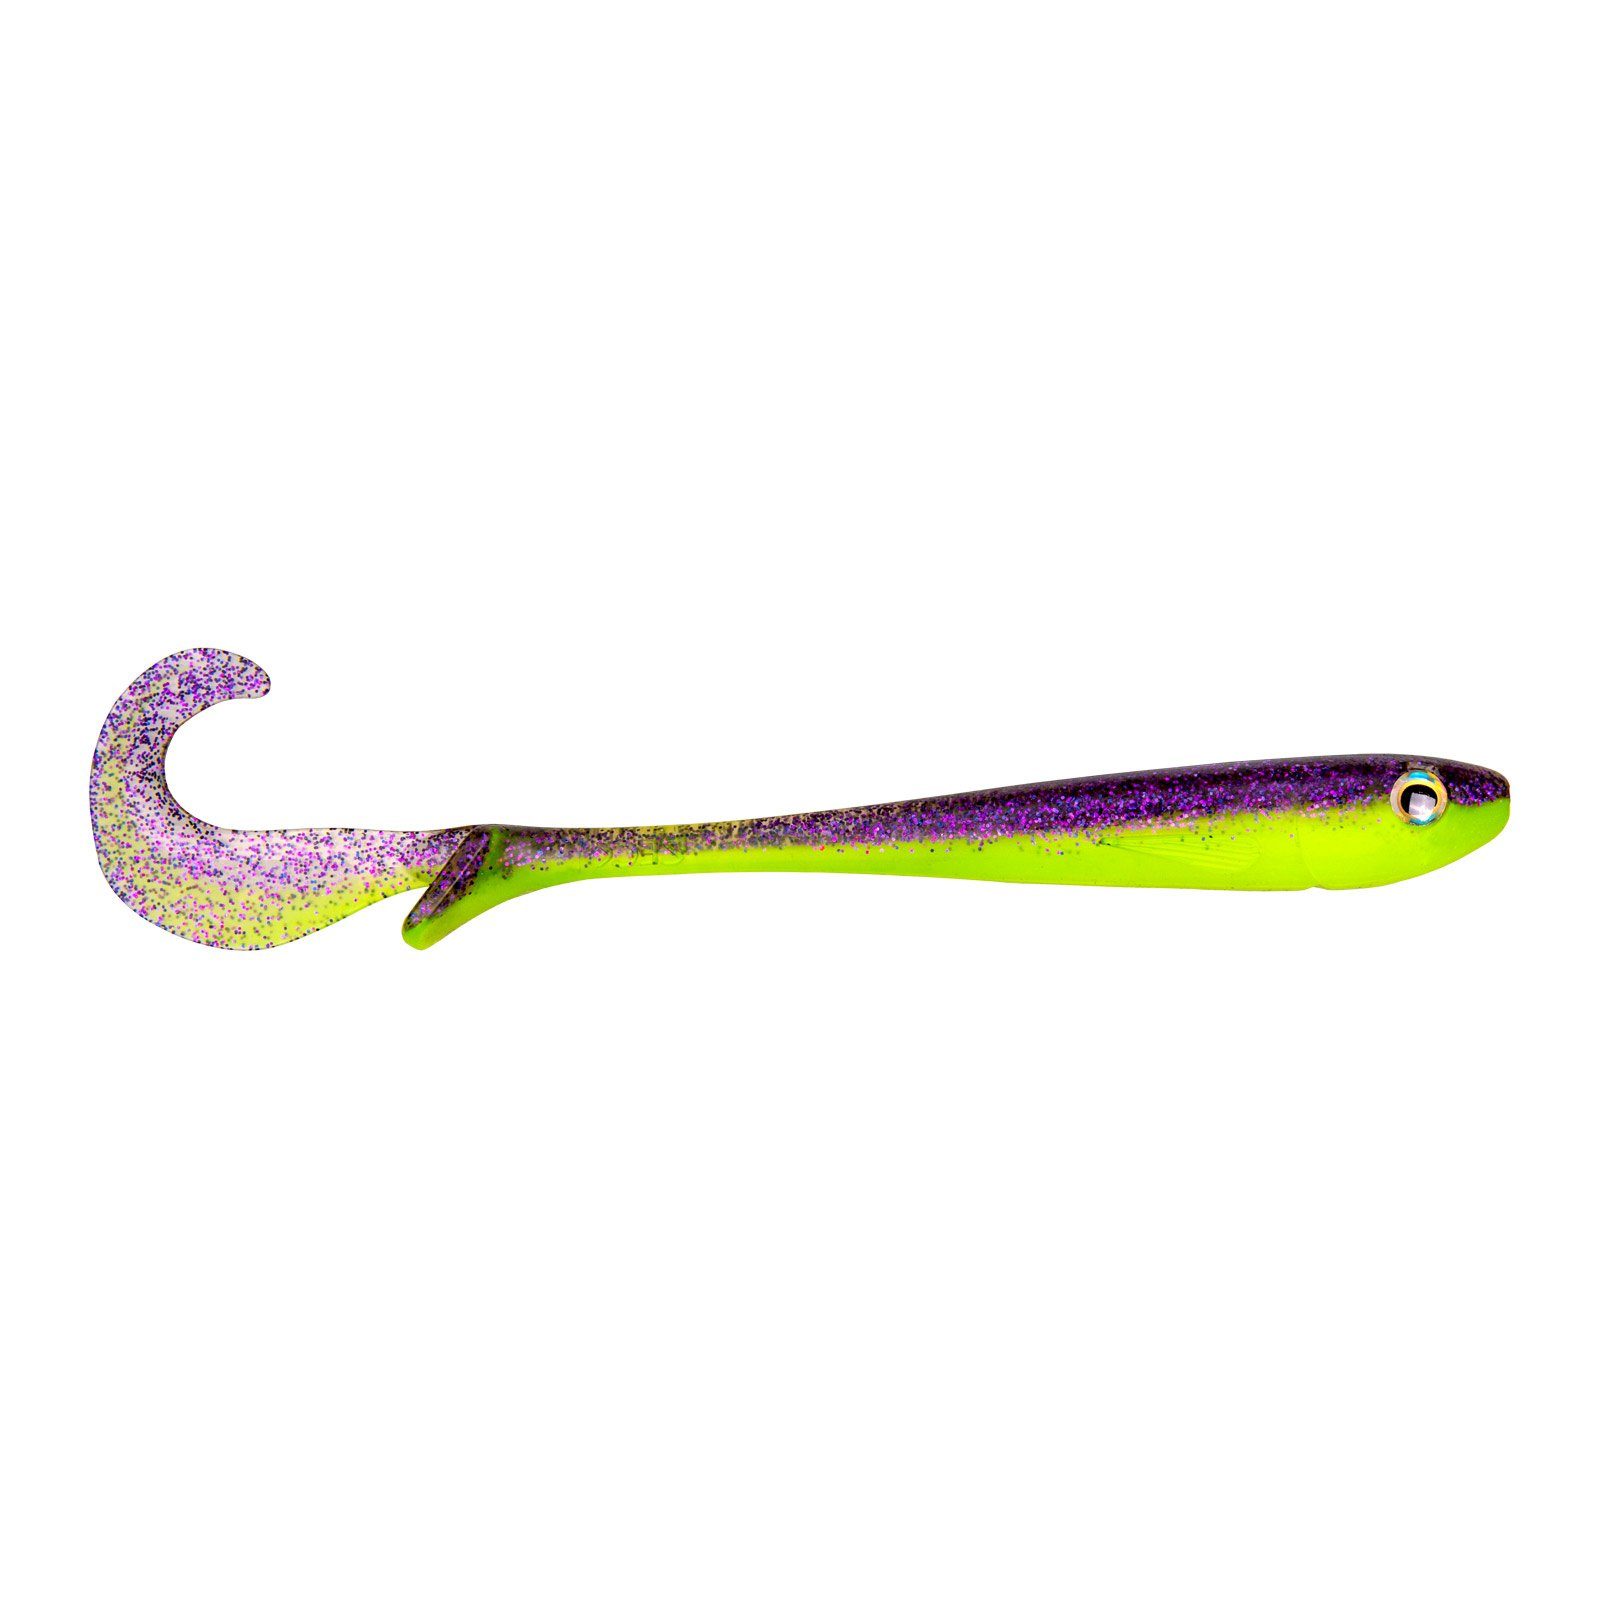 Butcher Baby Gummiköder Zeck Kunstköder, Chartreuse Purple Fishing 14cm